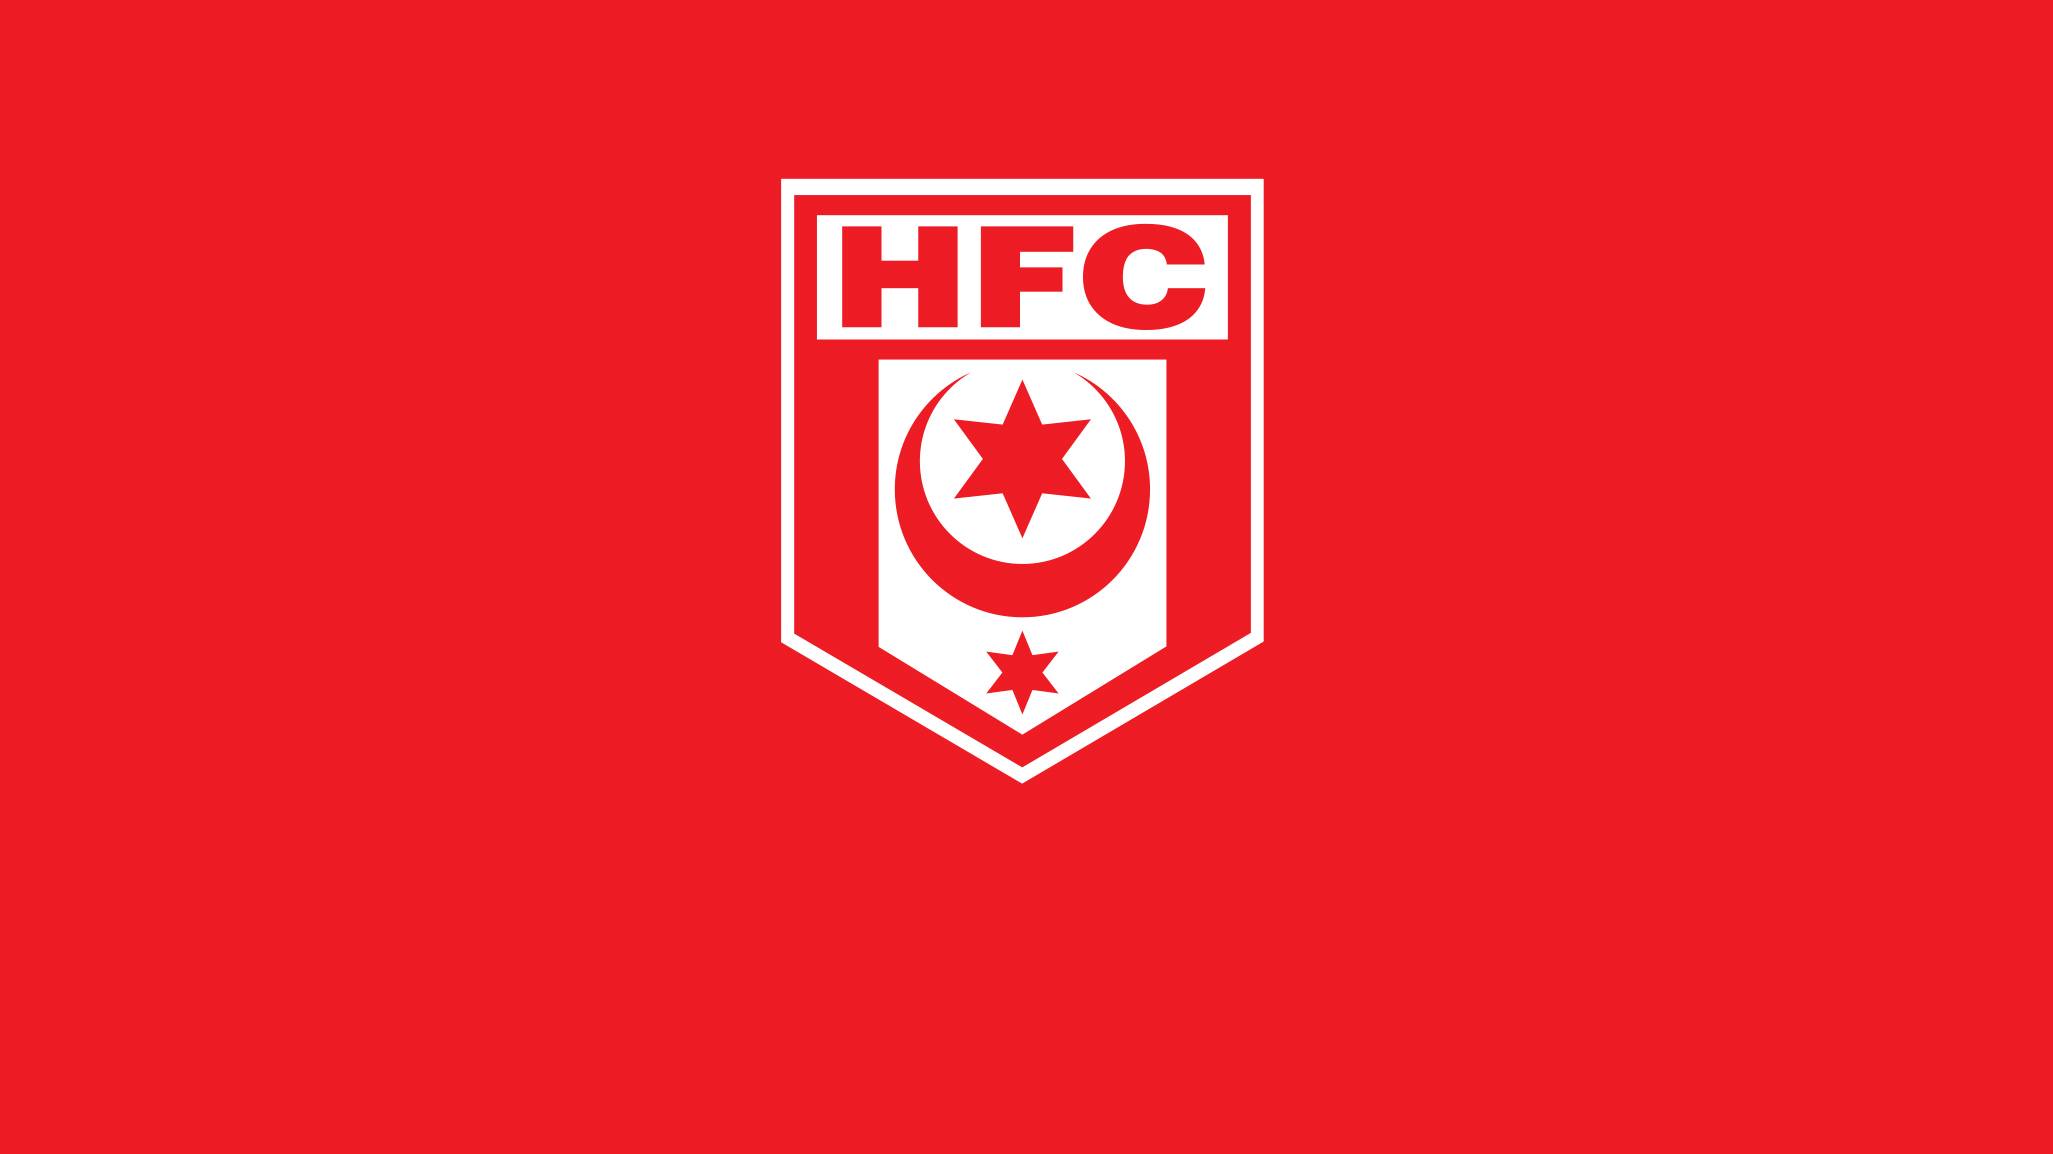 hallescher-fc-19-football-club-facts